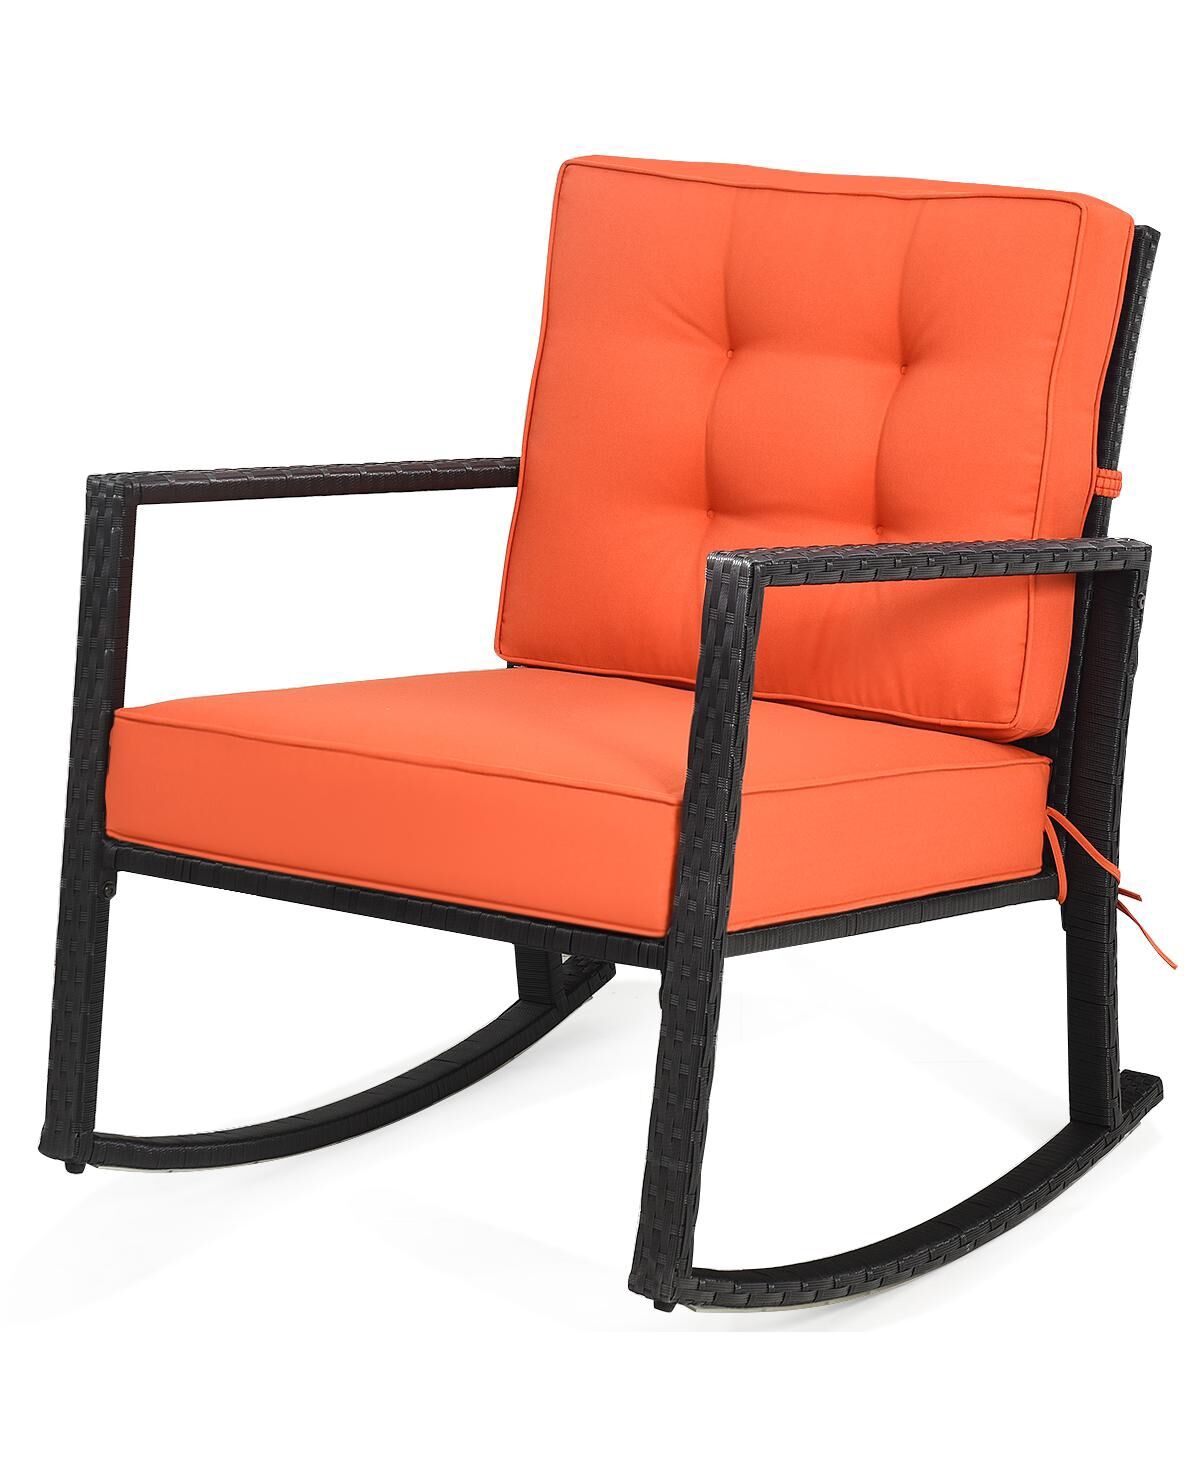 Costway Patio Rattan Rocker Chair Outdoor Glider Wicker Rocking Chair Cushion Lawn Deck - Orange